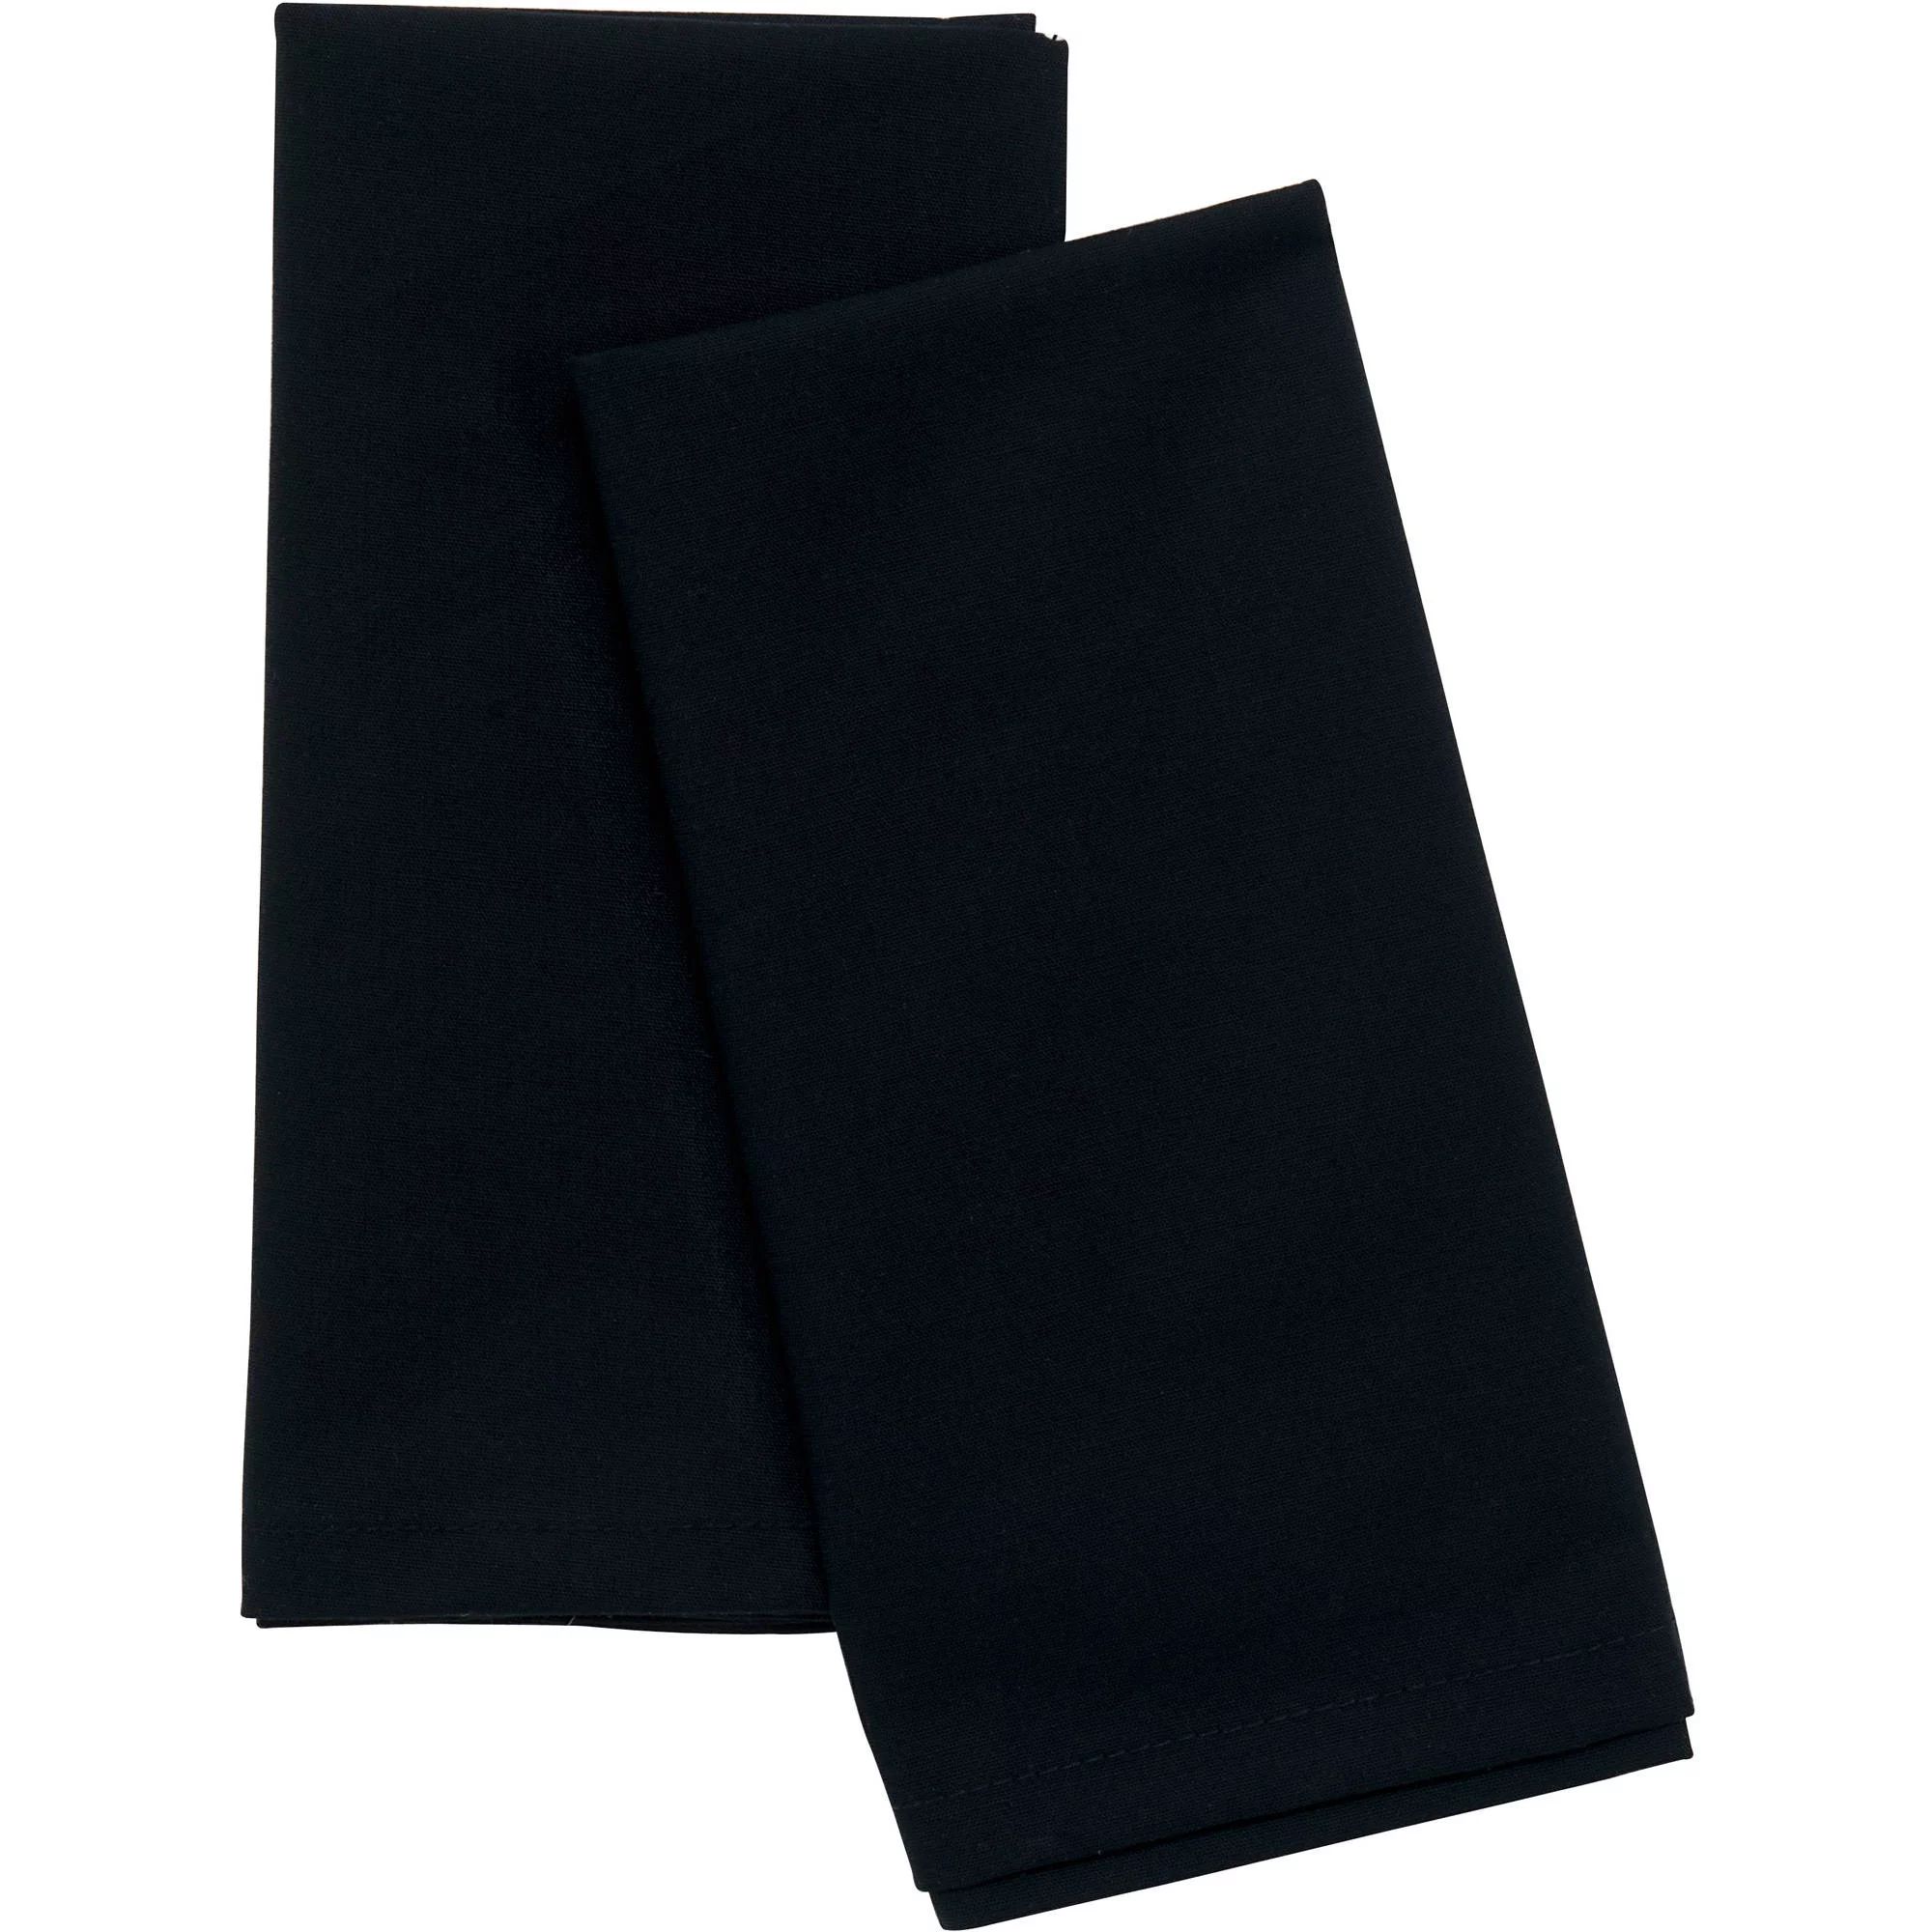 Mainstays Solid Fabric Napkin, Black, 18"W x 18"L, 2 Piece | Walmart (US)